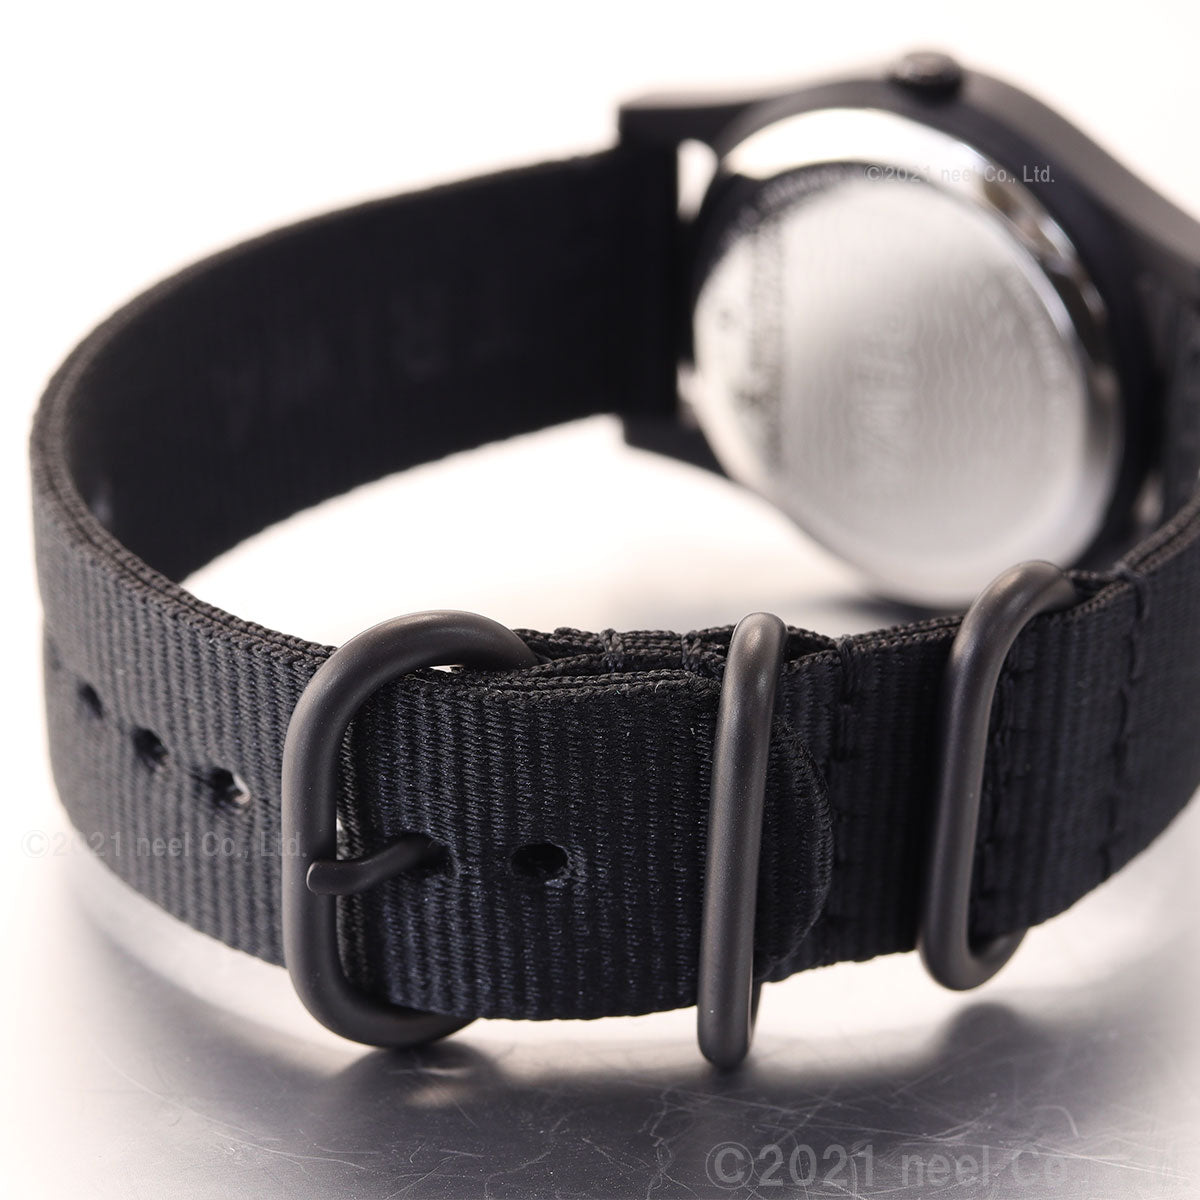 トリワ TRIWA 腕時計 メンズ レディース タイムフォーオーシャンズ 日本限定モデル ブラック TIME FOR OCEANS JAPAN LIMITED TFO110-CL150101